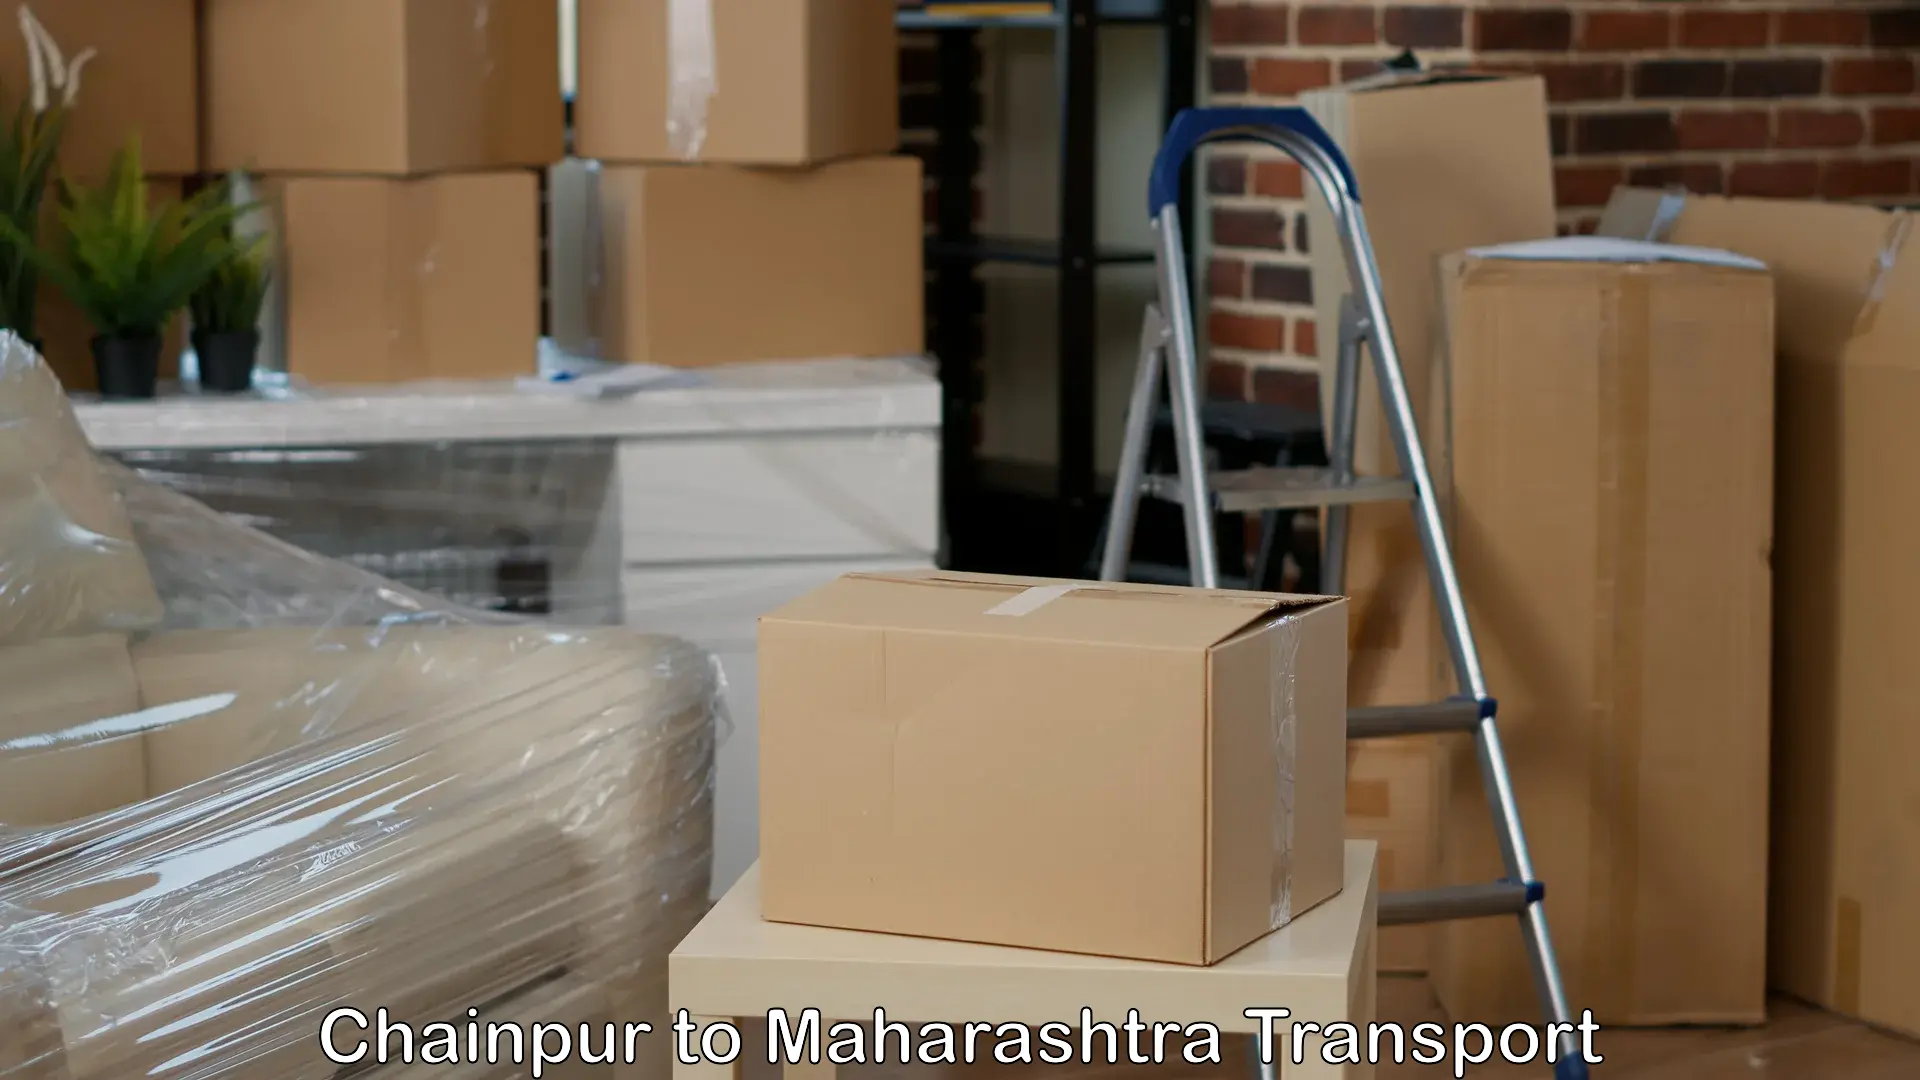 Bike shipping service Chainpur to Ahmednagar